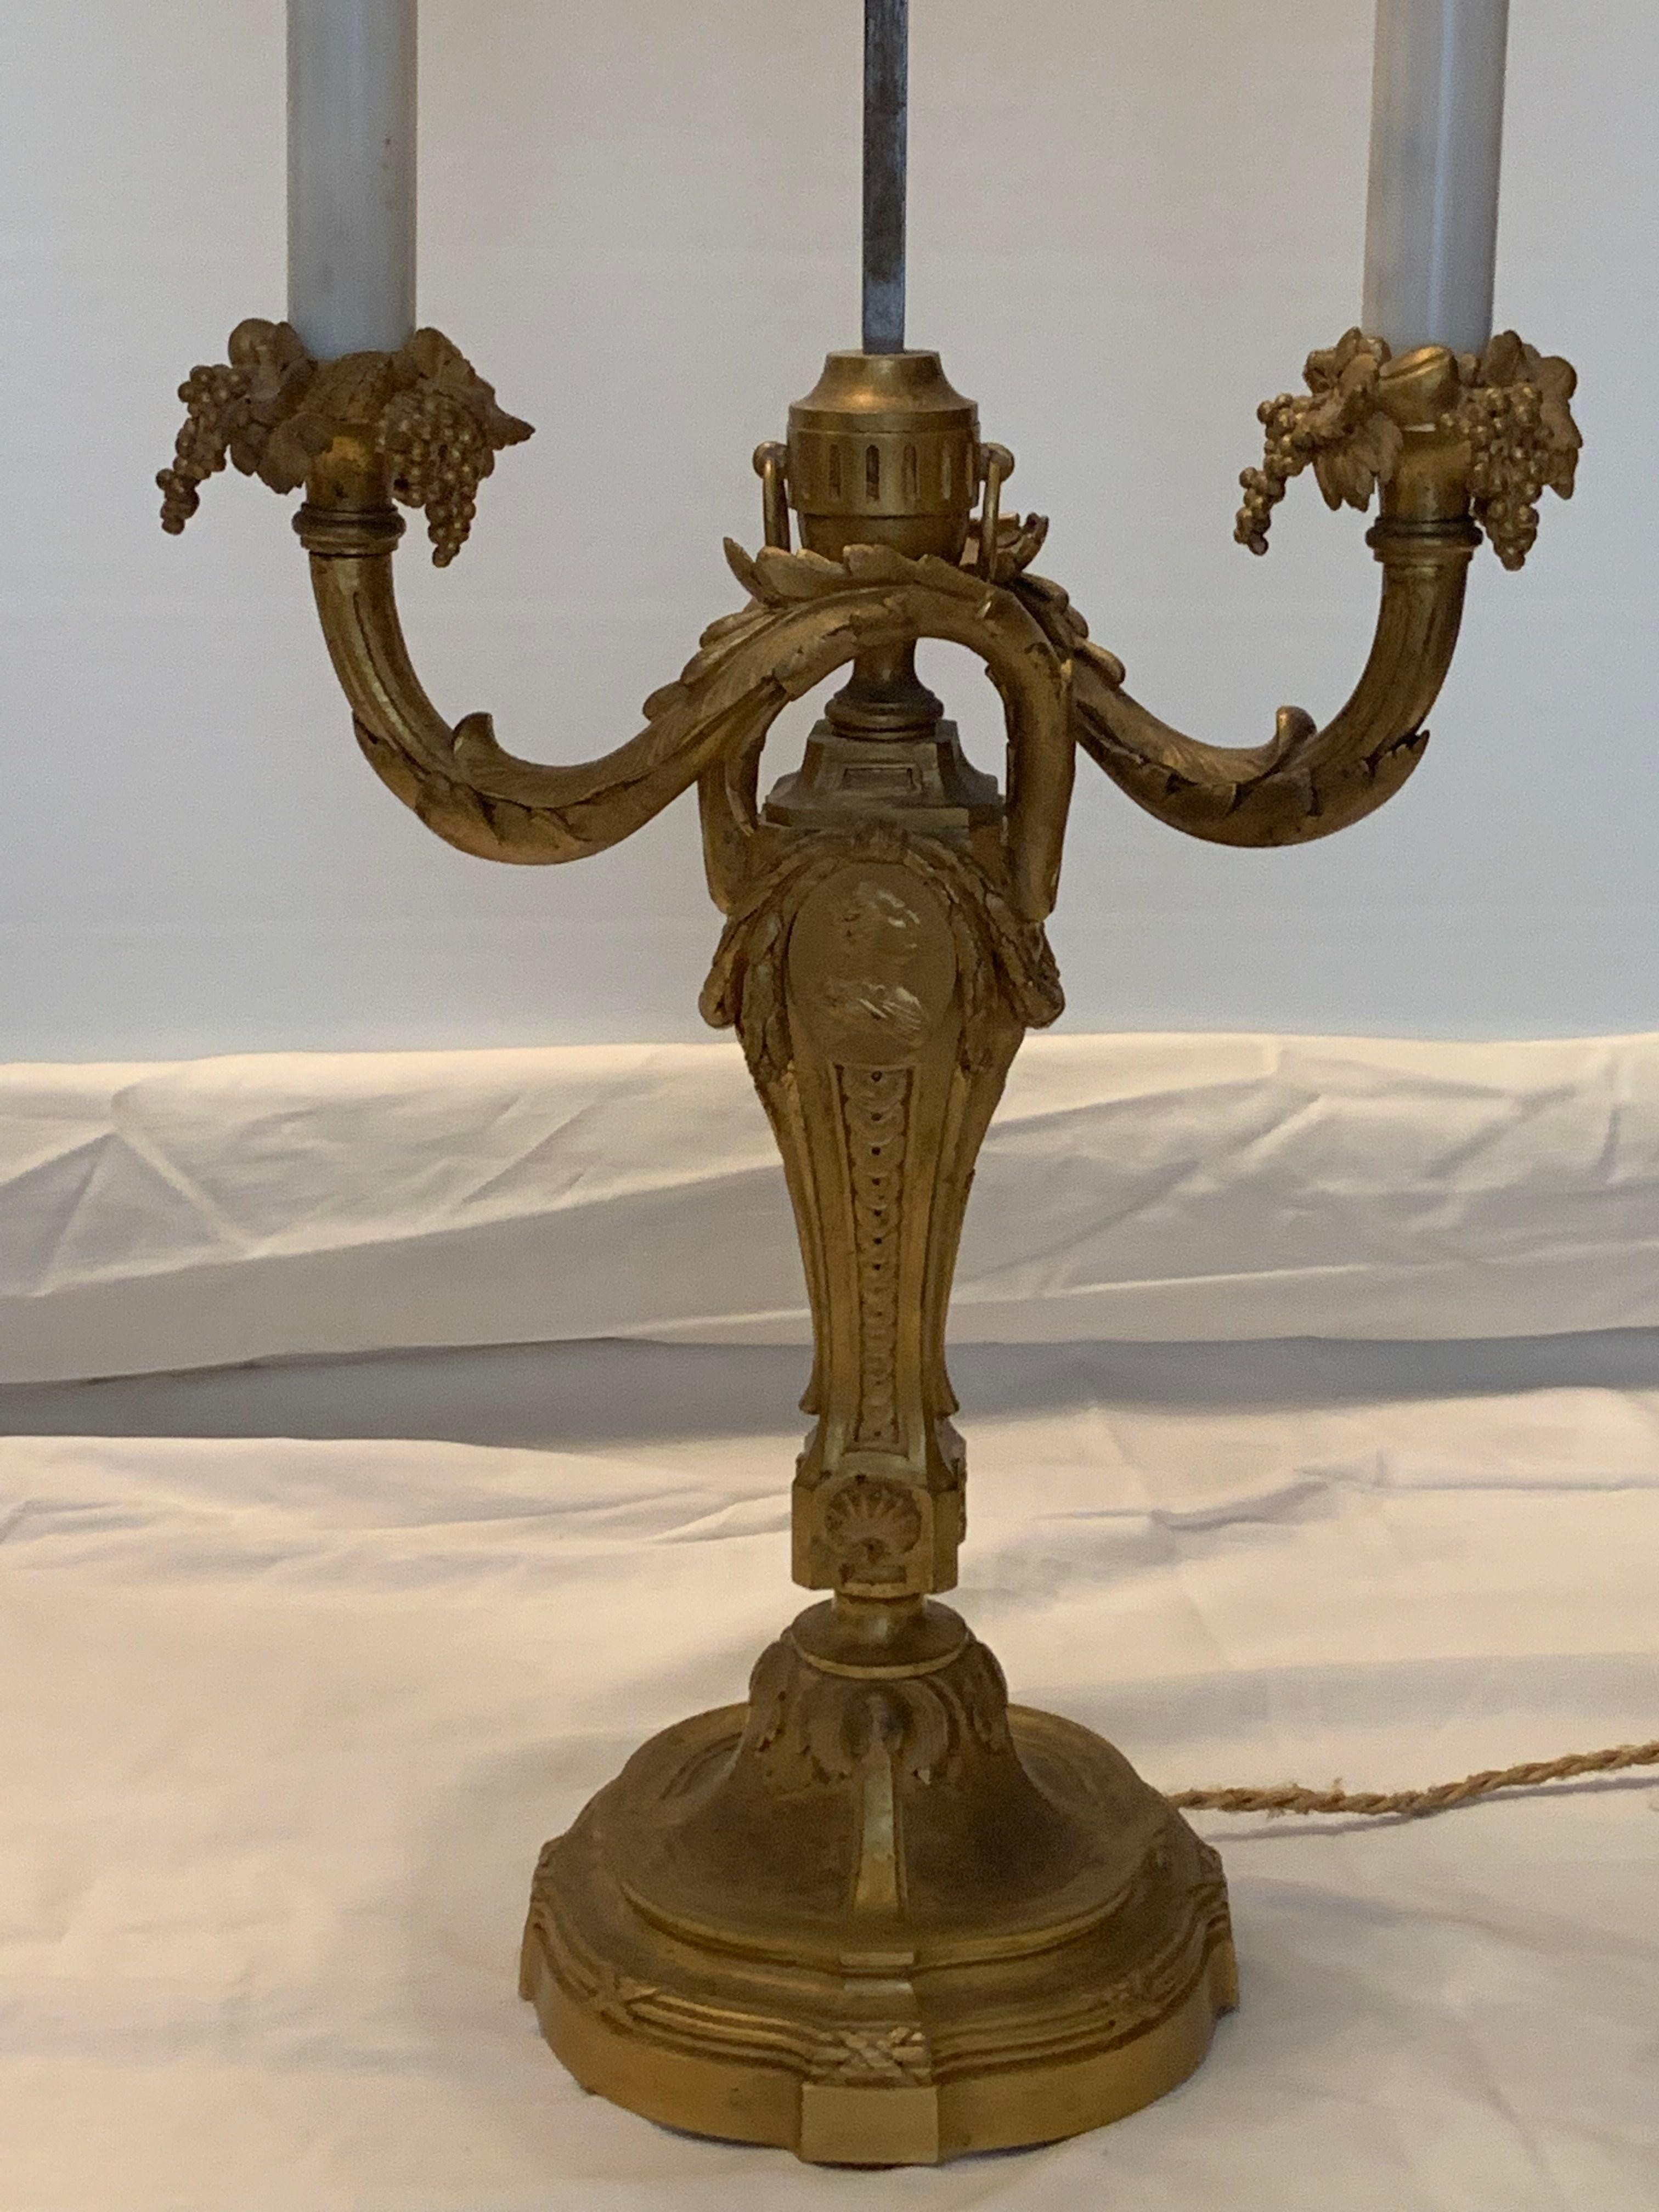 Louis XVI Stil Lampen zwei Lichter in Bronze genannt Bouyotte Lampen mit seinem Lampenschirm in lackiertem Blech, bordeaux Farbe. Der Lampenschirm kann auf die gewünschte Höhe eingestellt werden 
die Bobeches sind mit Obststräußen geschmückt  (sehr